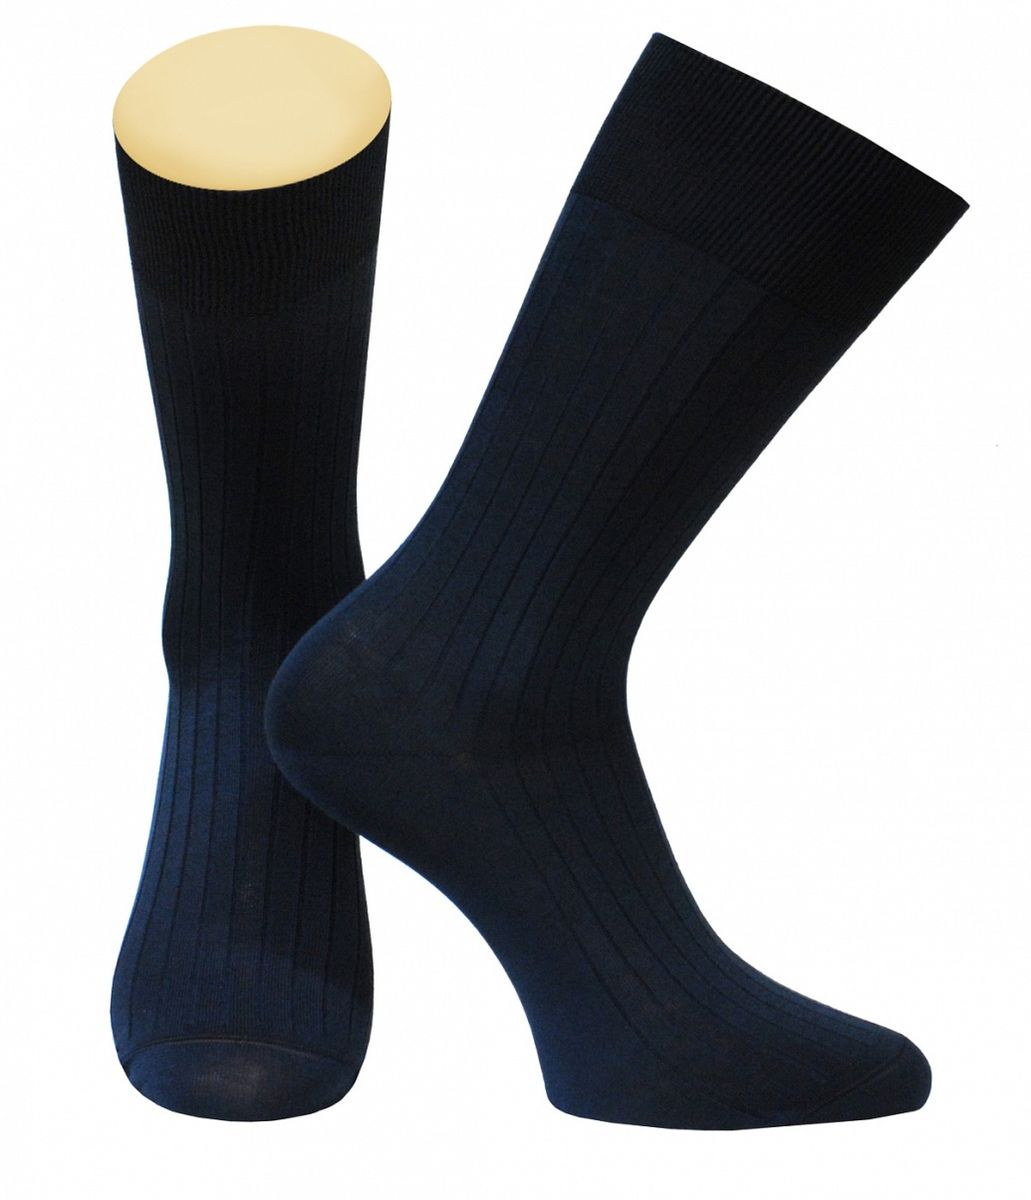 Носки мужские Collonil, цвет: темно-синий. 2-94/08. Размер 39-41